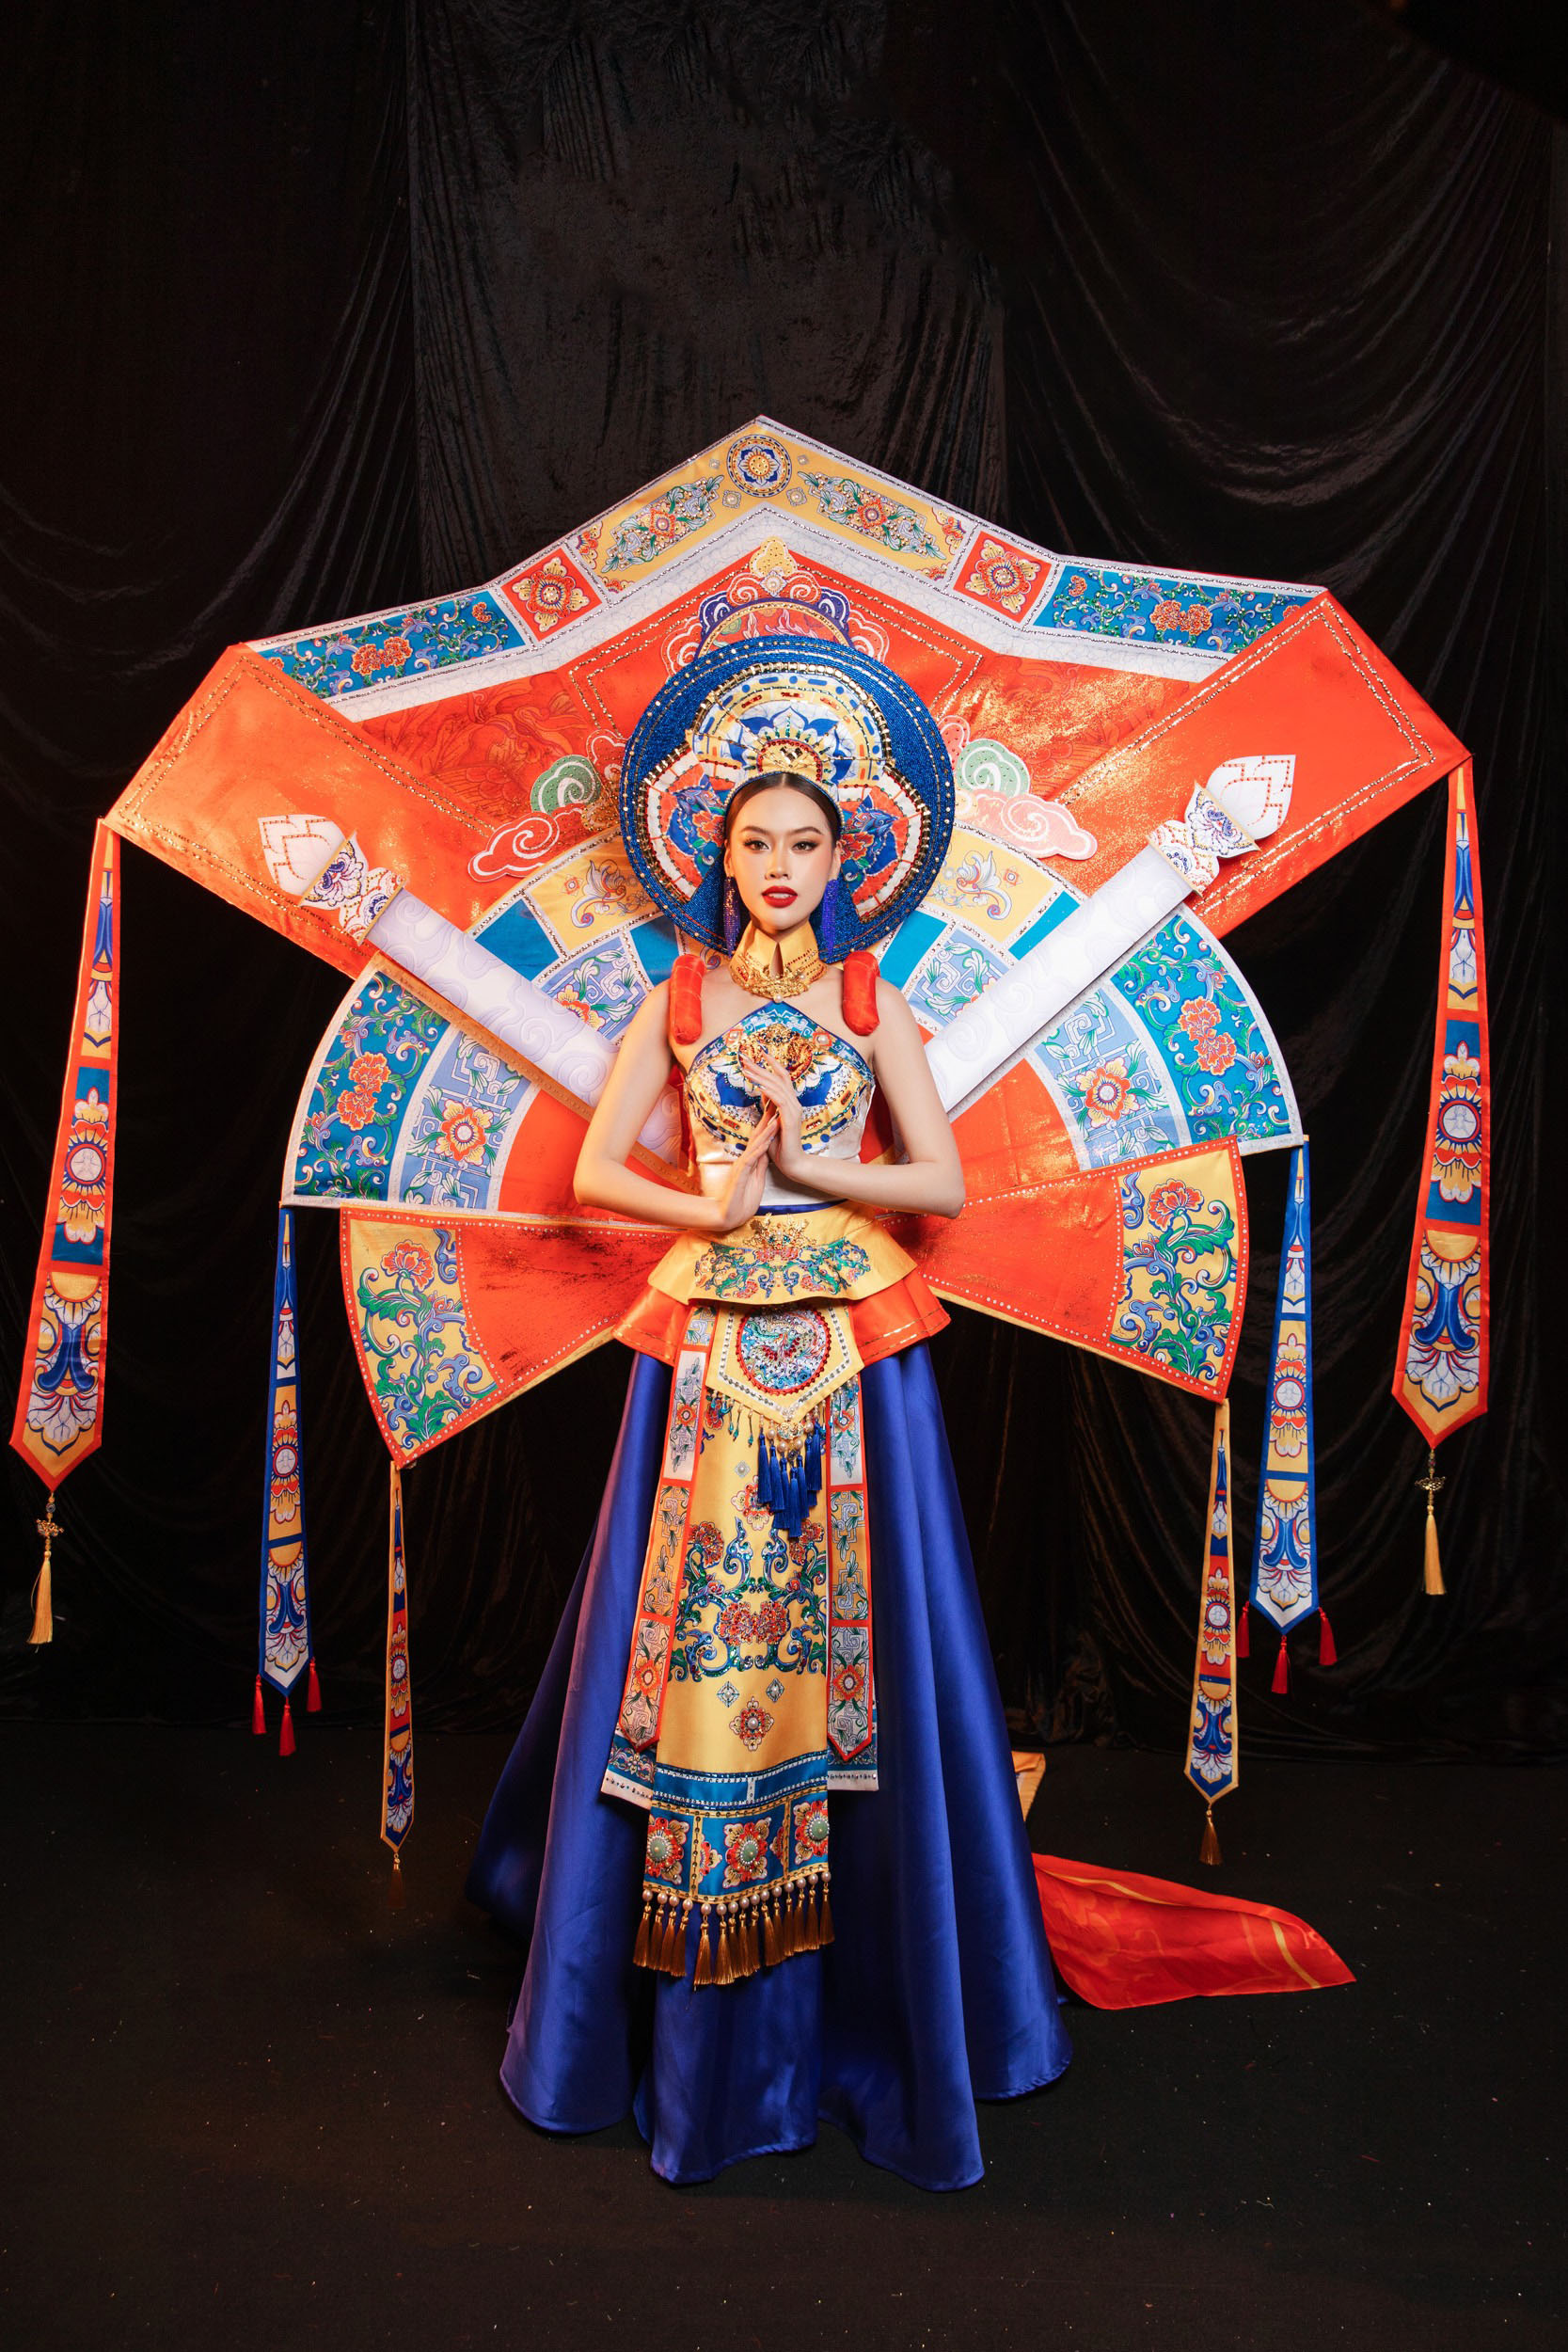 Đặng Hoàng Tâm Như trình diễn trang phục dân tộc lấy cảm hứng từ nghệ thuật Pháp lam Huế - 3